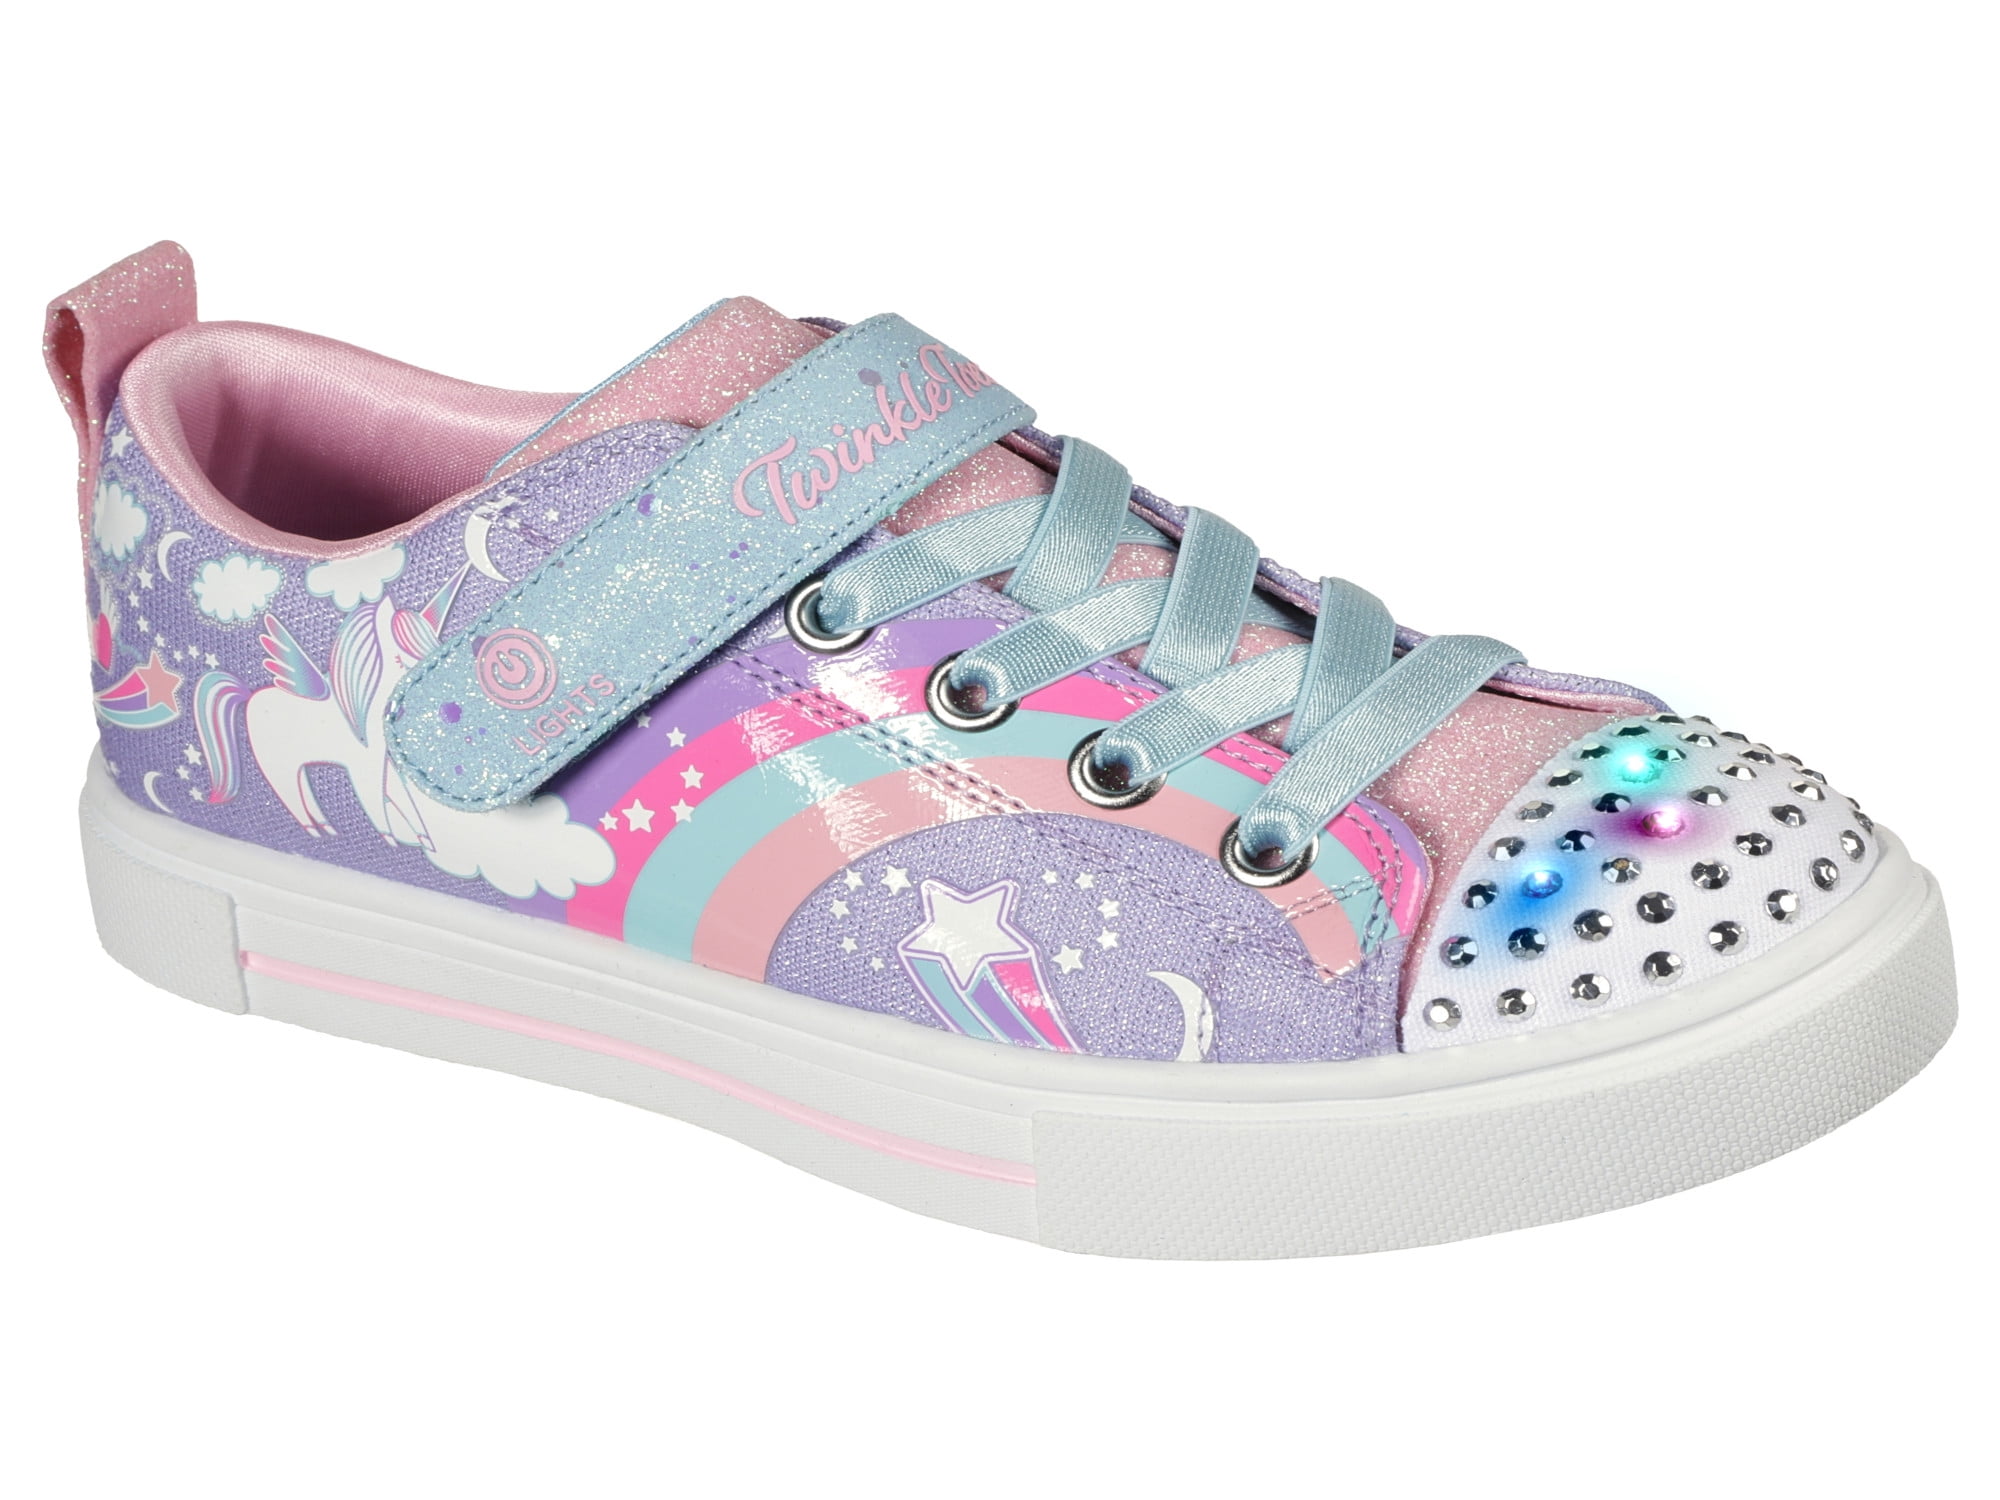 Werkgever Precies Verzadigen Skechers Girls Twinkle Toes Light Up Sneakers Unicorn Charm - Walmart.com